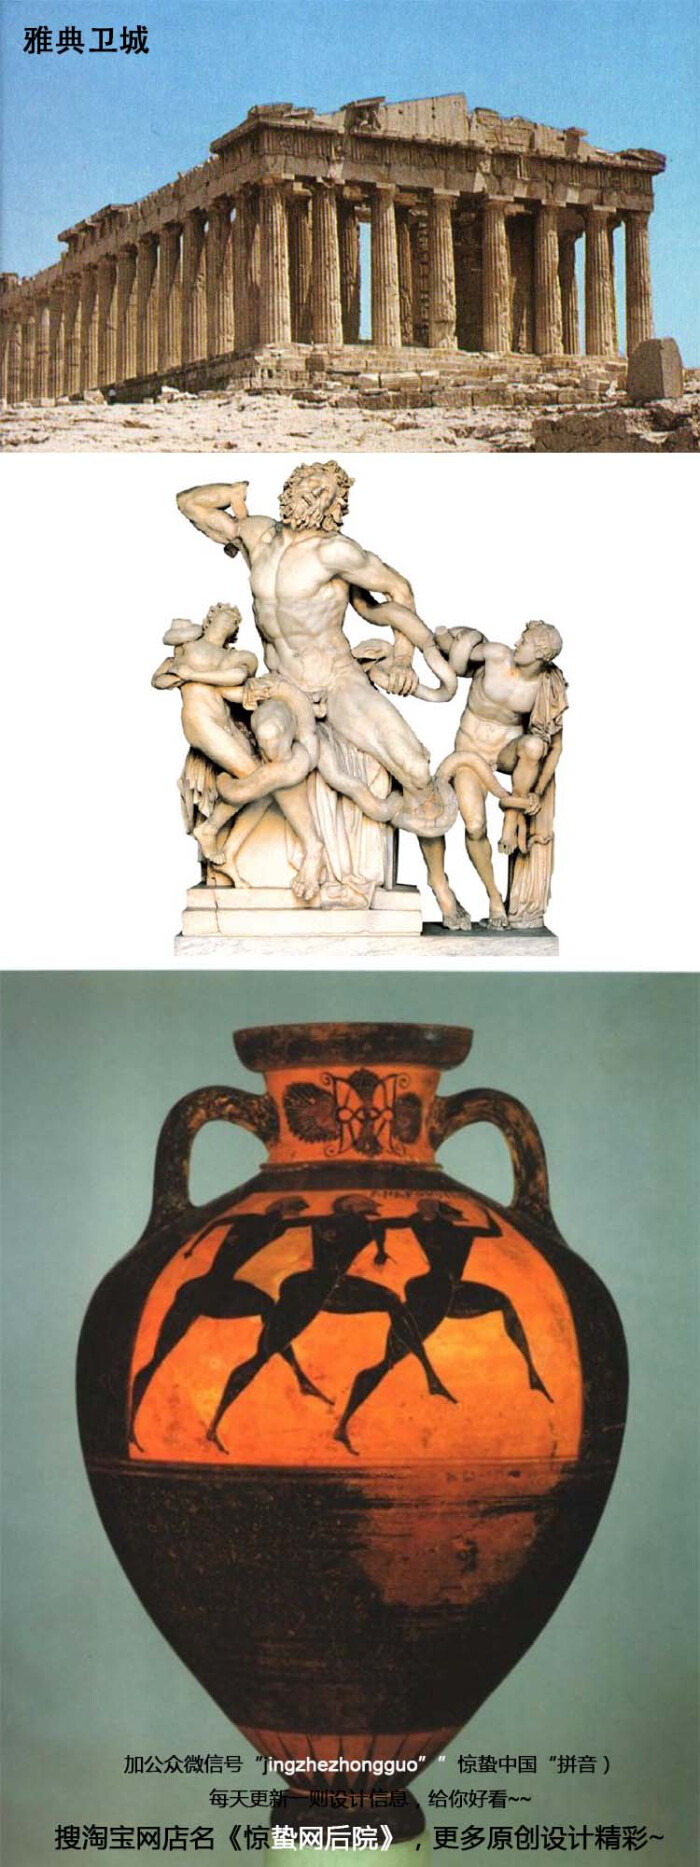 古希腊一个文明程度高度集中的时期,也是艺术大爆发时期,体现在作品